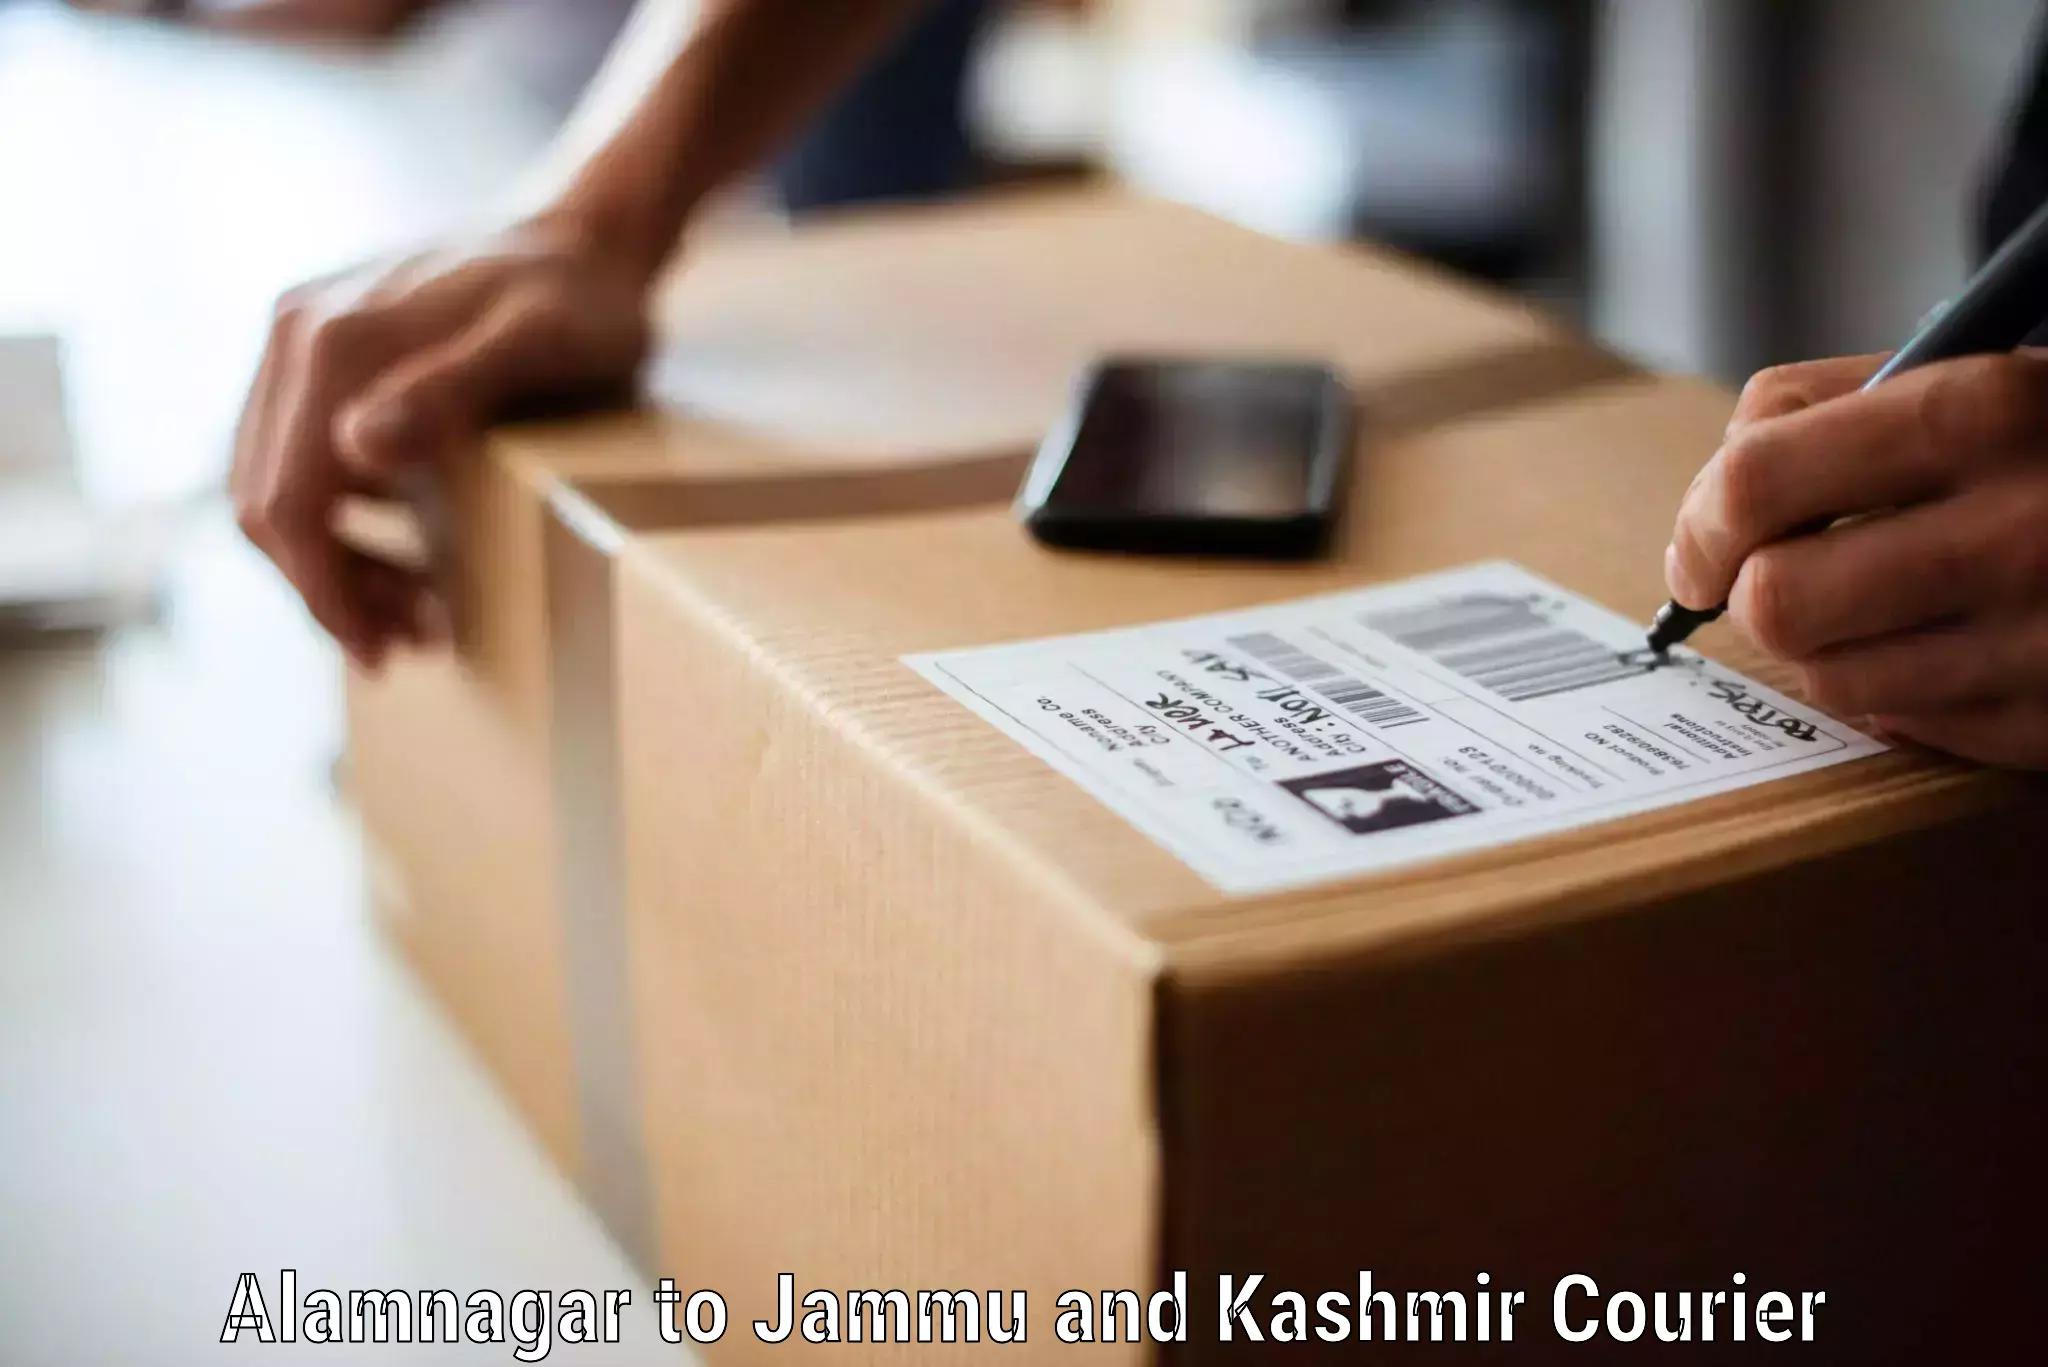 Furniture transport company Alamnagar to Jammu and Kashmir